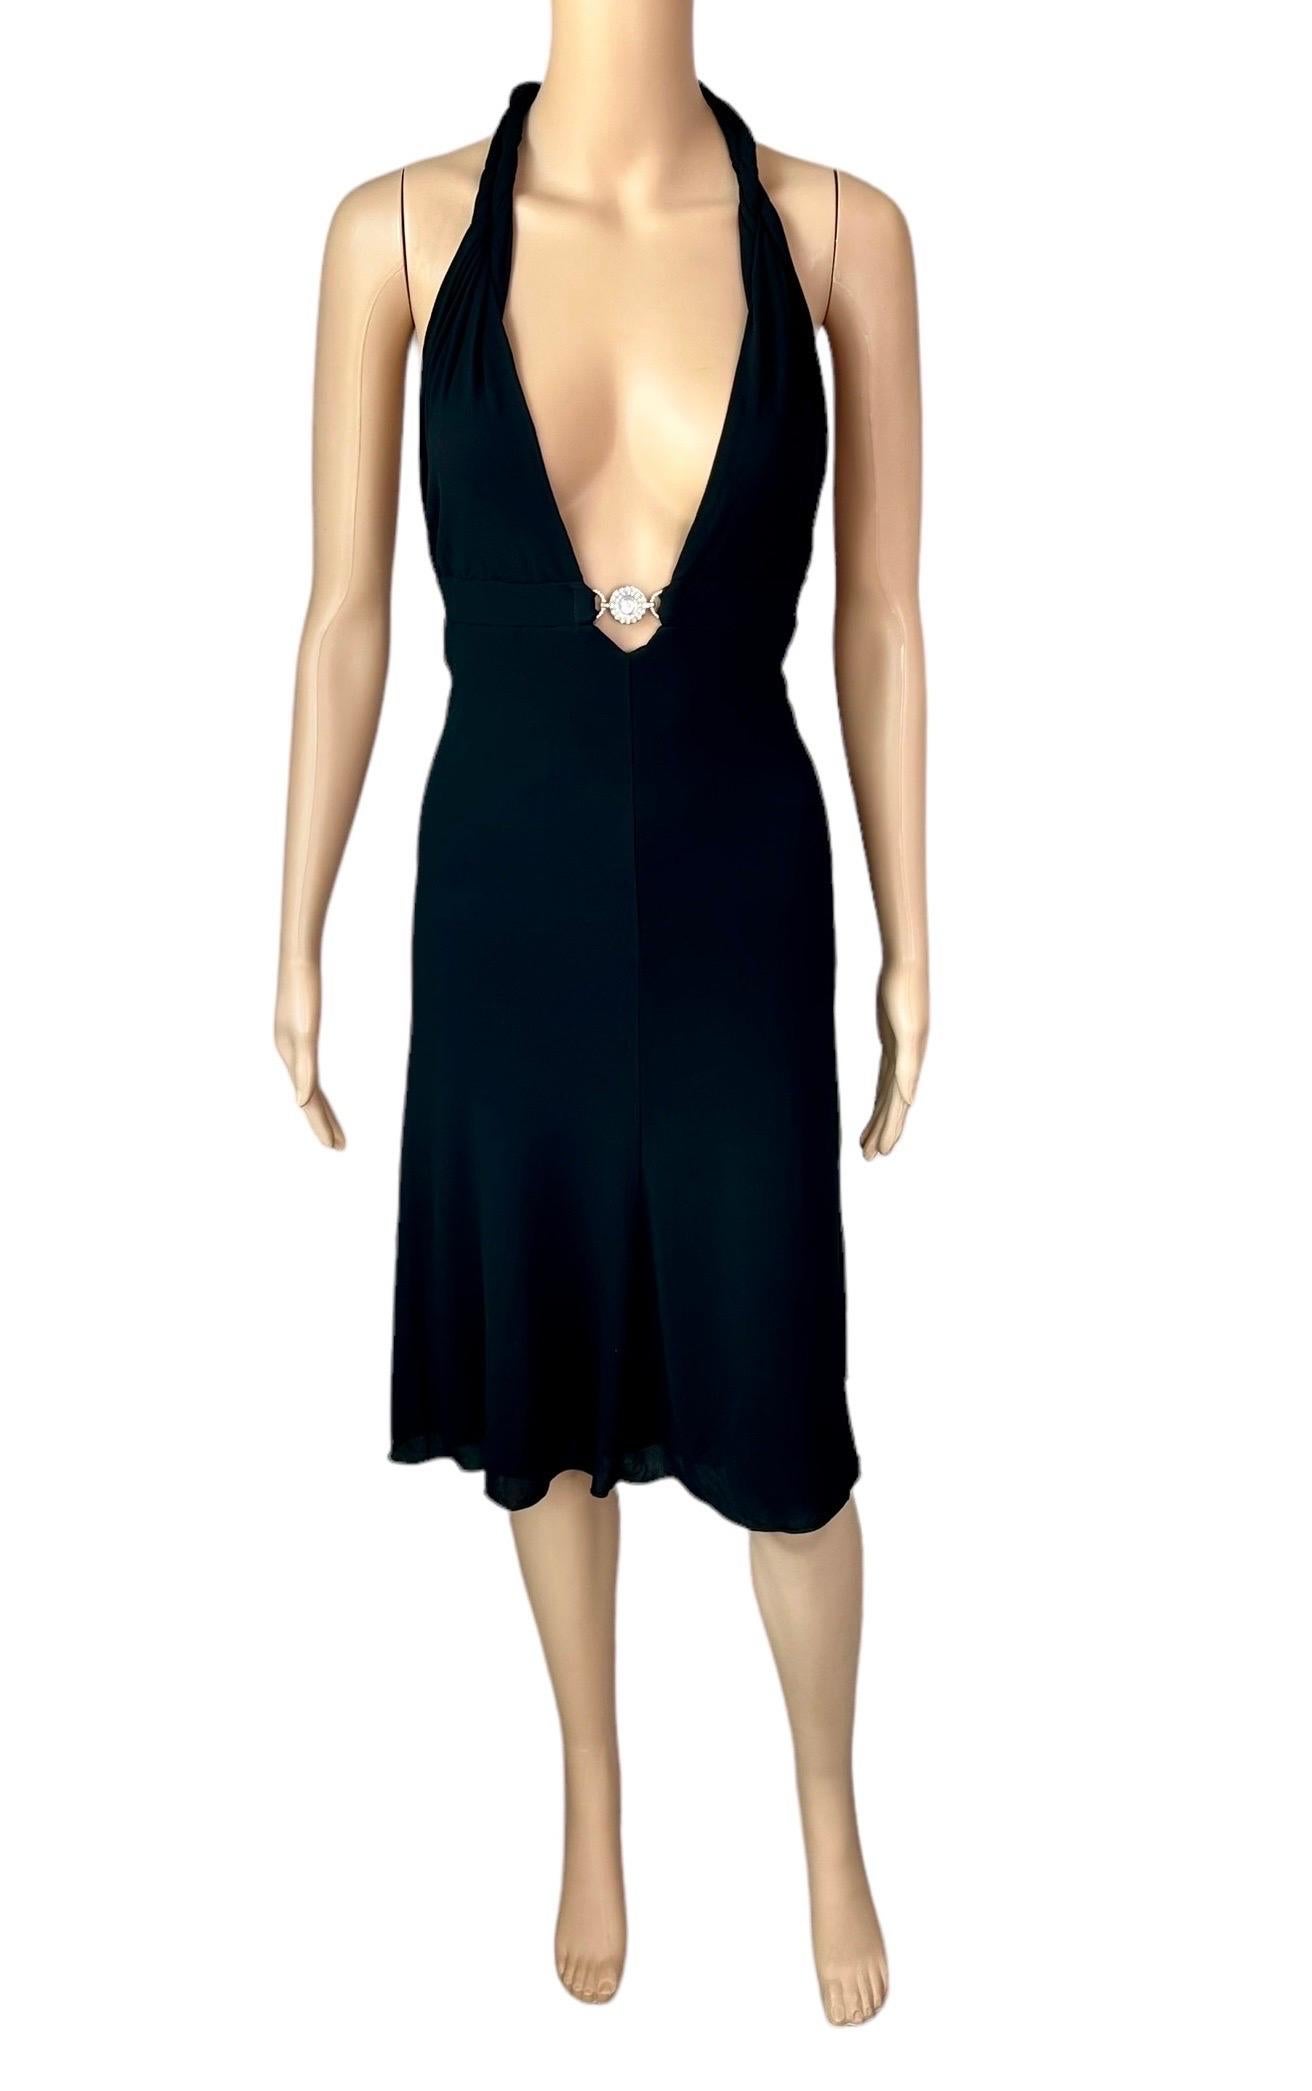 Versace S/S 2007 Kristall Logo tiefer Ausschnitt Rückenfreies Halter Schwarzes Kleid IT 40

Schwarzes Neckholderkleid von Versace mit silbernem, kristallverziertem Versace Medusa Logo, tiefem Ausschnitt und offenem Rücken.

Zustand: Neu mit